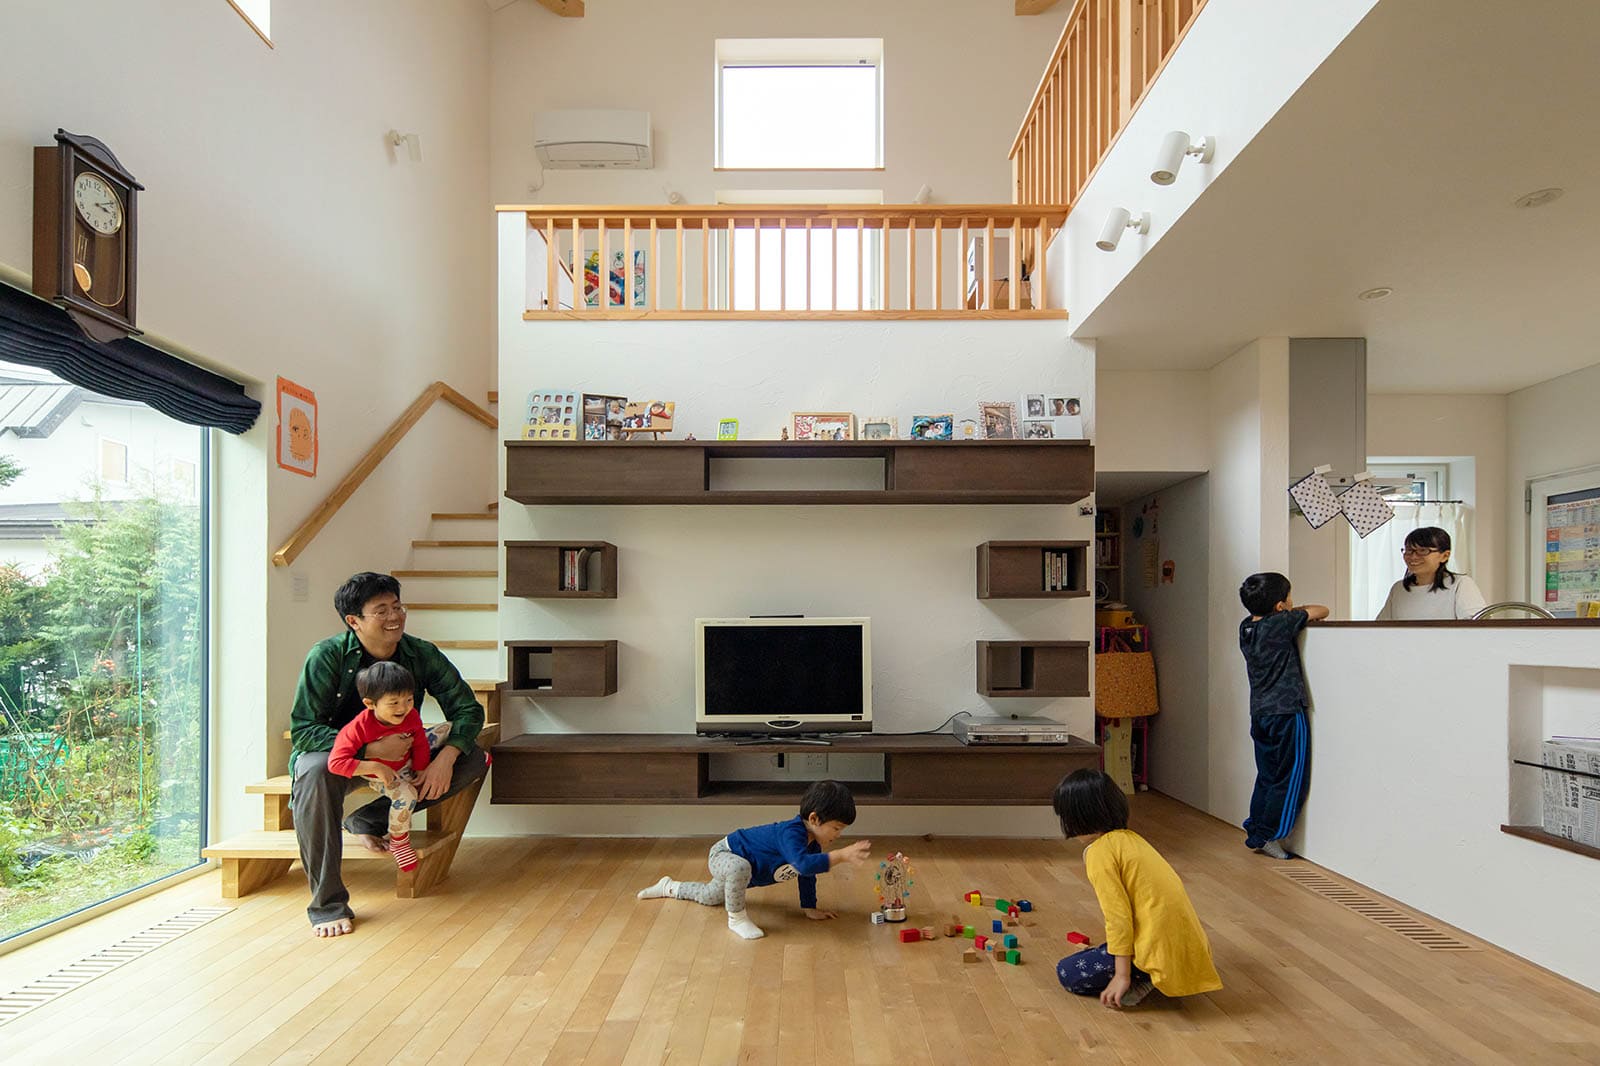 家じゅうが子どもの遊び場 アスレチック要素満載の楽しい家3例 子ども部屋 家づくりのアイデア Replan リプラン Webmagazine